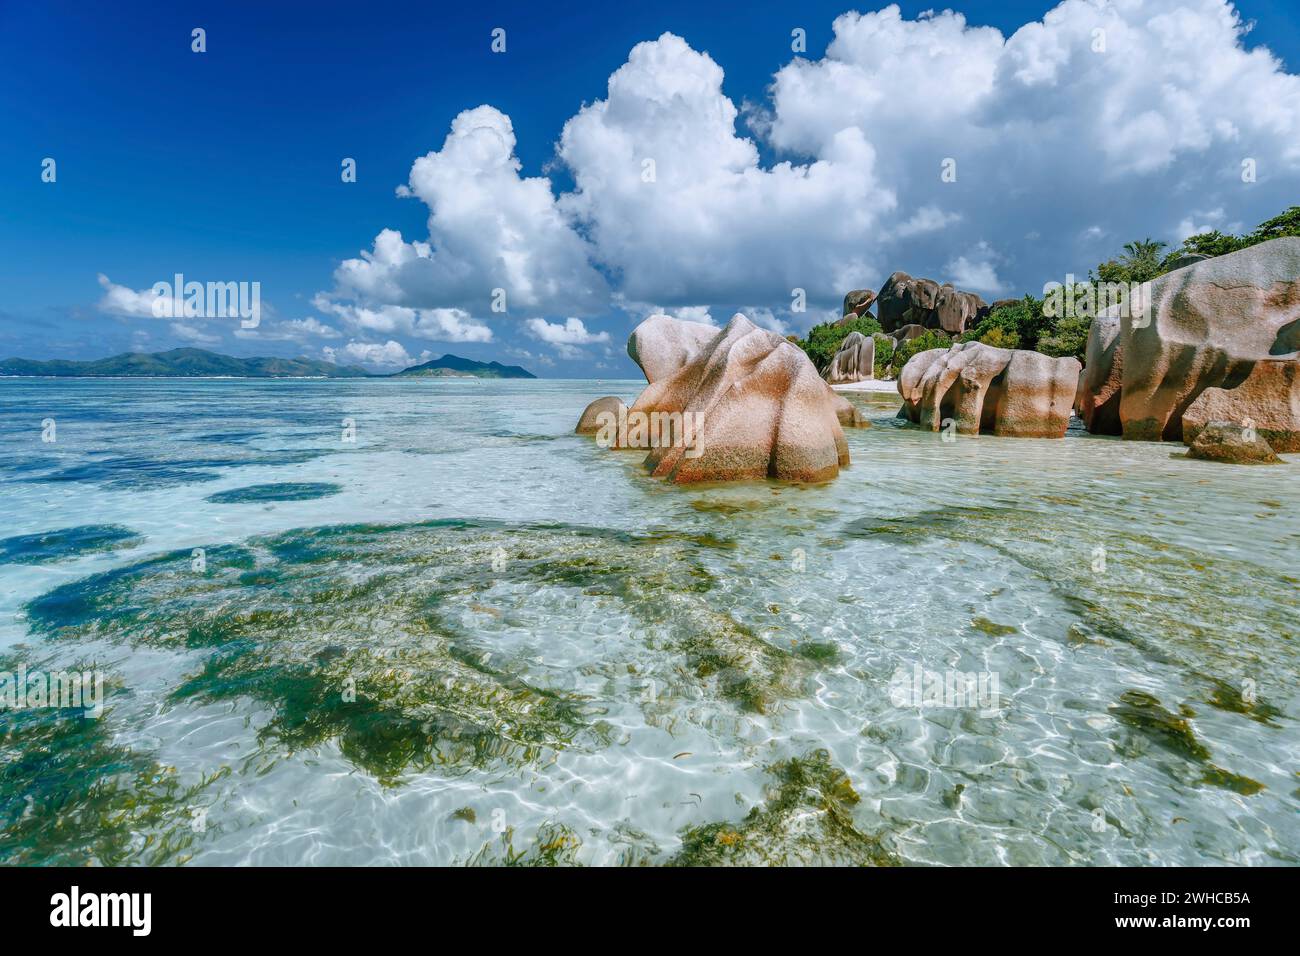 Anse Source d'Argent nella bassa marea - Spiaggia tropicale Paradiso con laguna blu poco profonda, massi di granito e nuvole bianche sopra. Isola di la Digue, Seychelles. Foto Stock